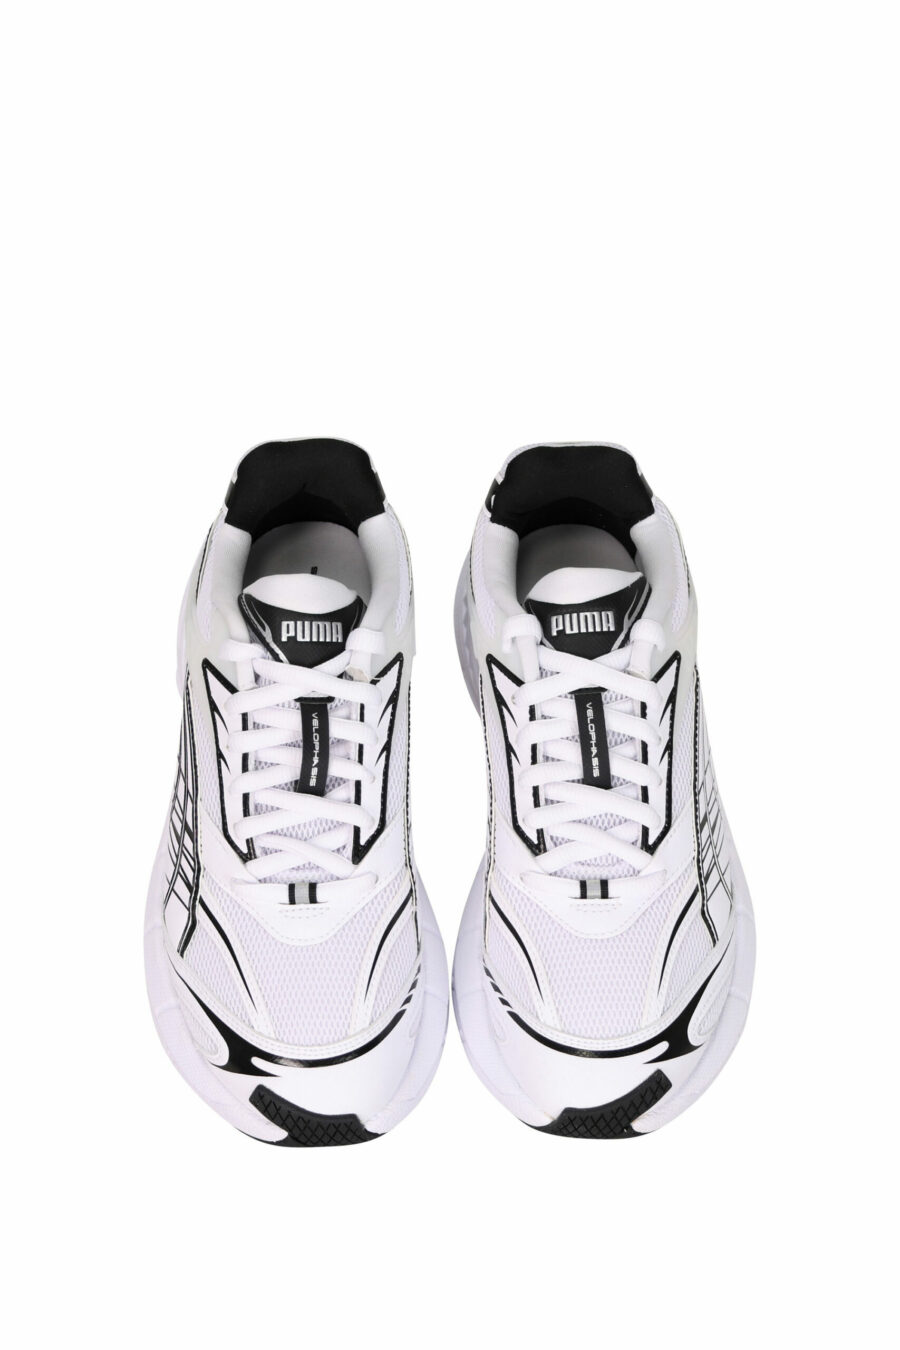 Zapatillas blancas "velophasis" con logo - 4099686482466 4 scaled